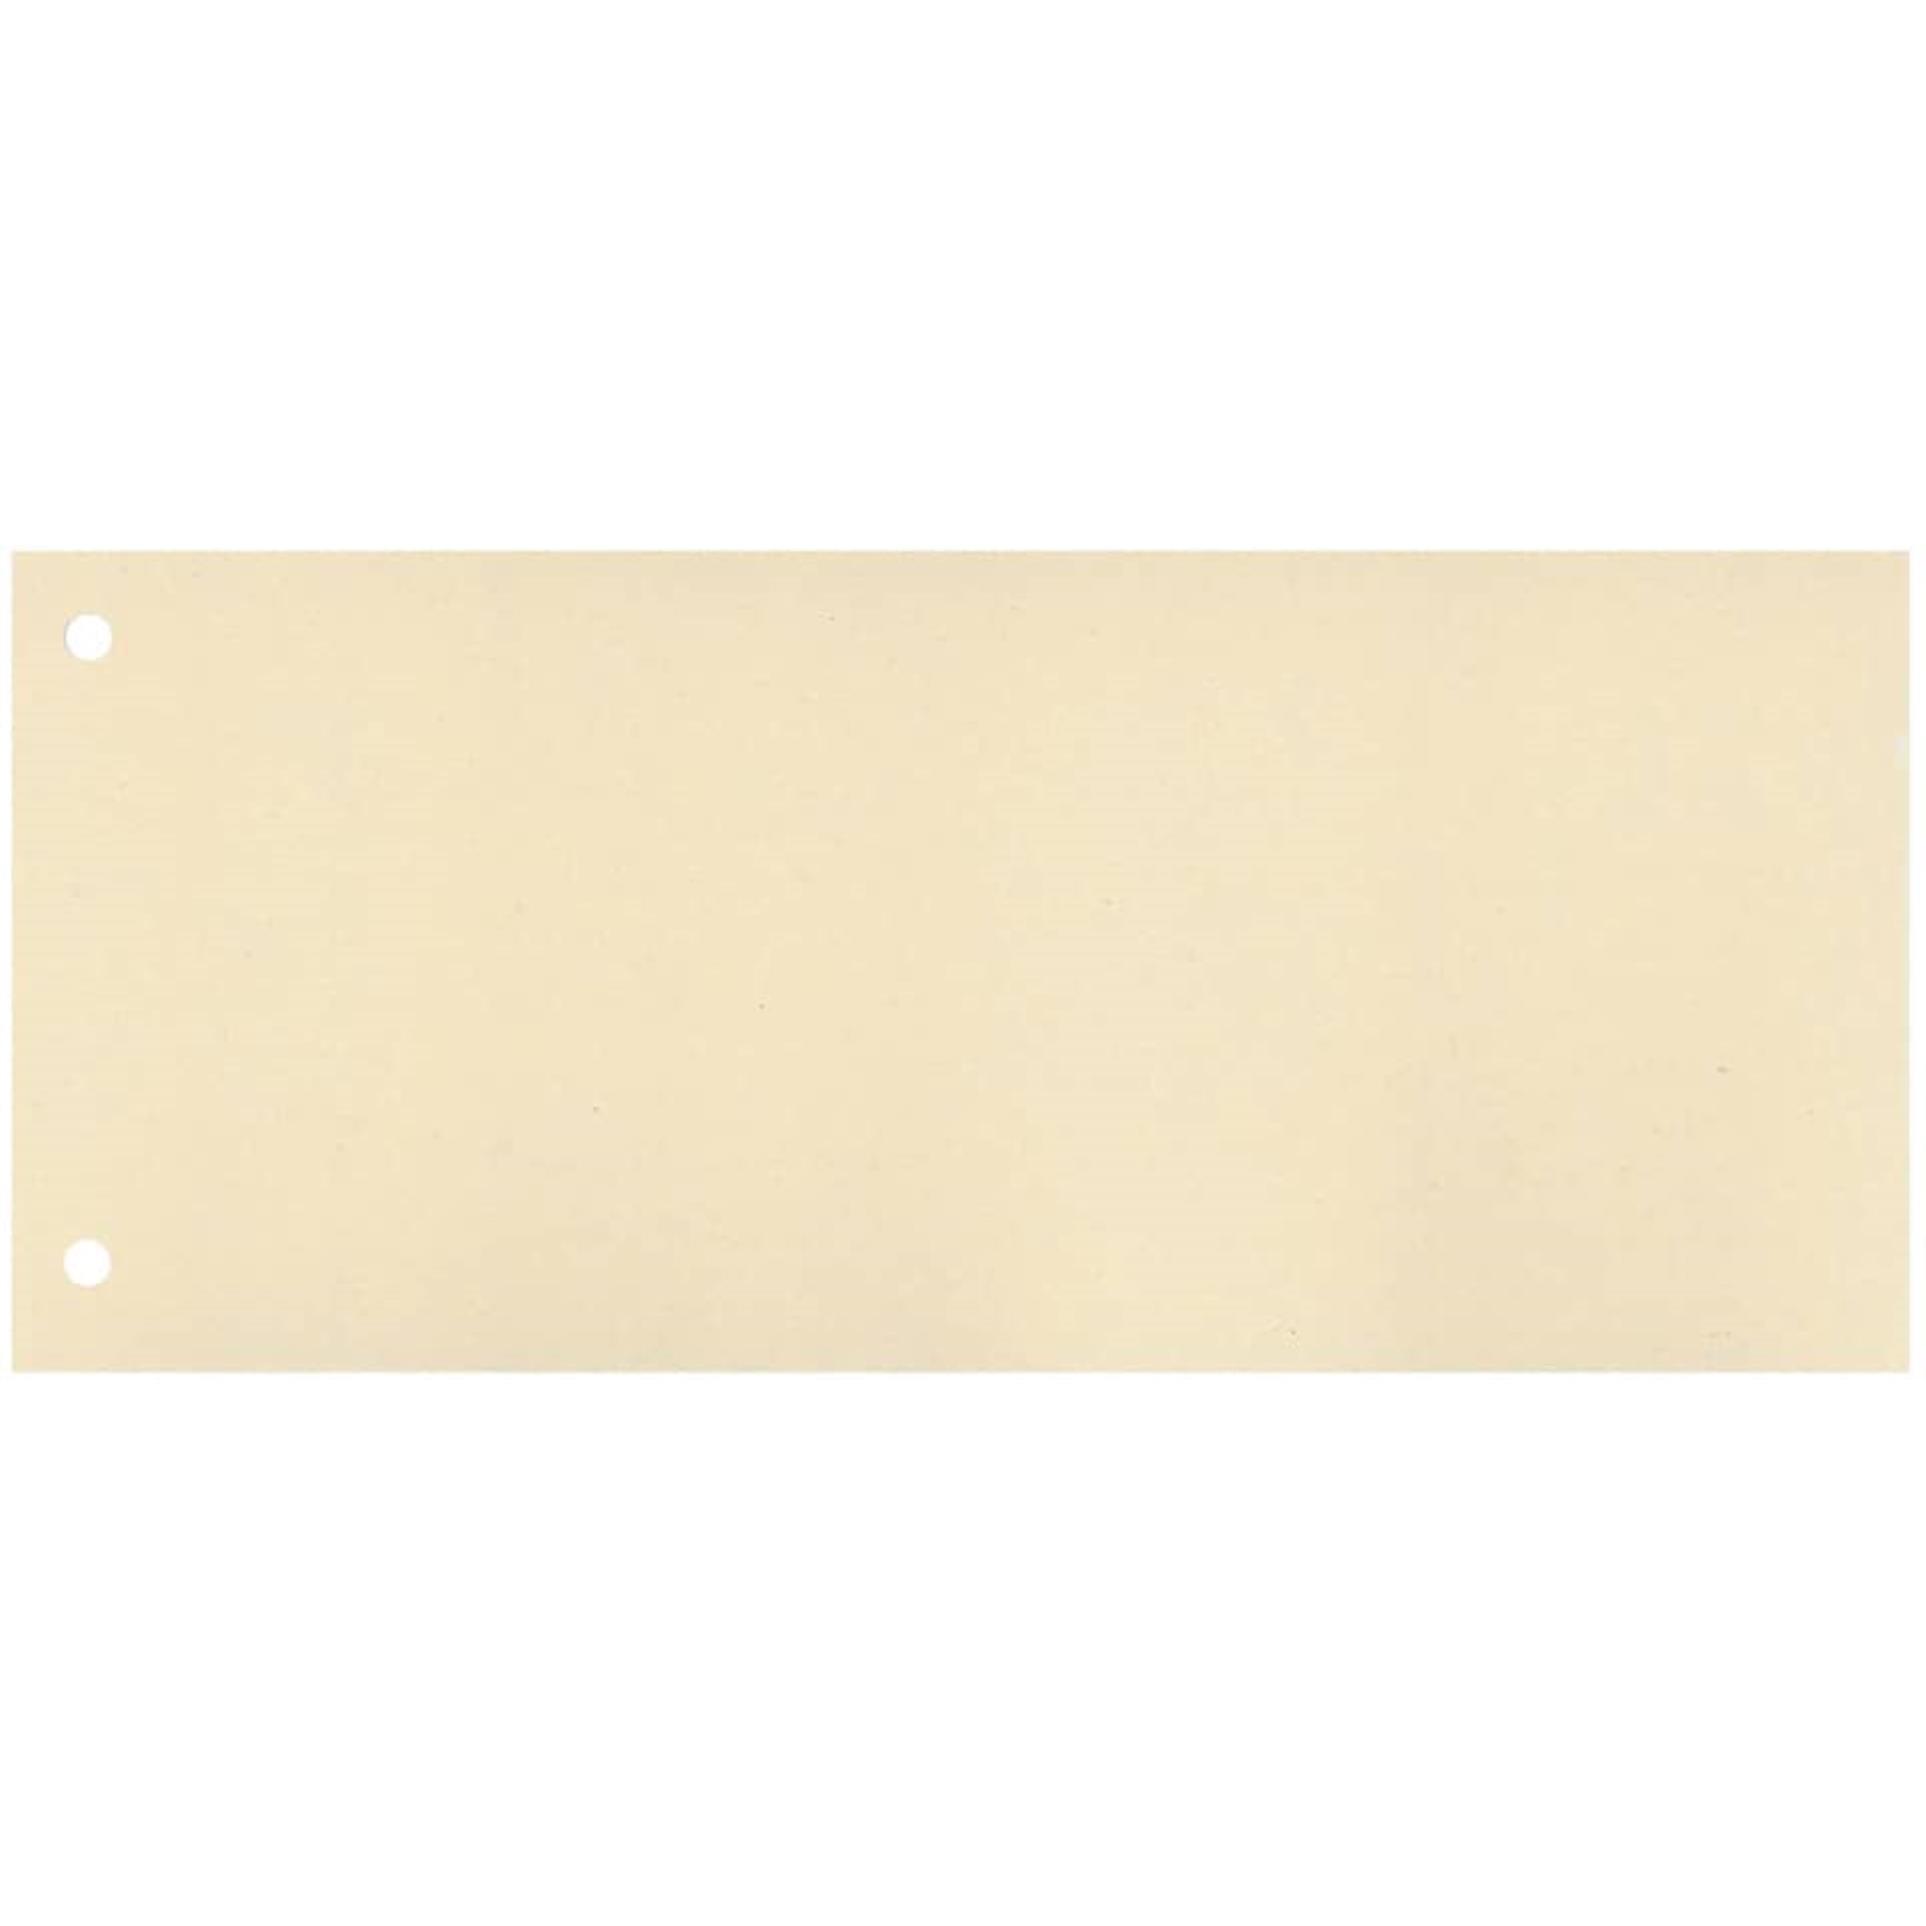 Papírový rozřazovač 1/3 Q-Connect, sv.žlutý, 100ks